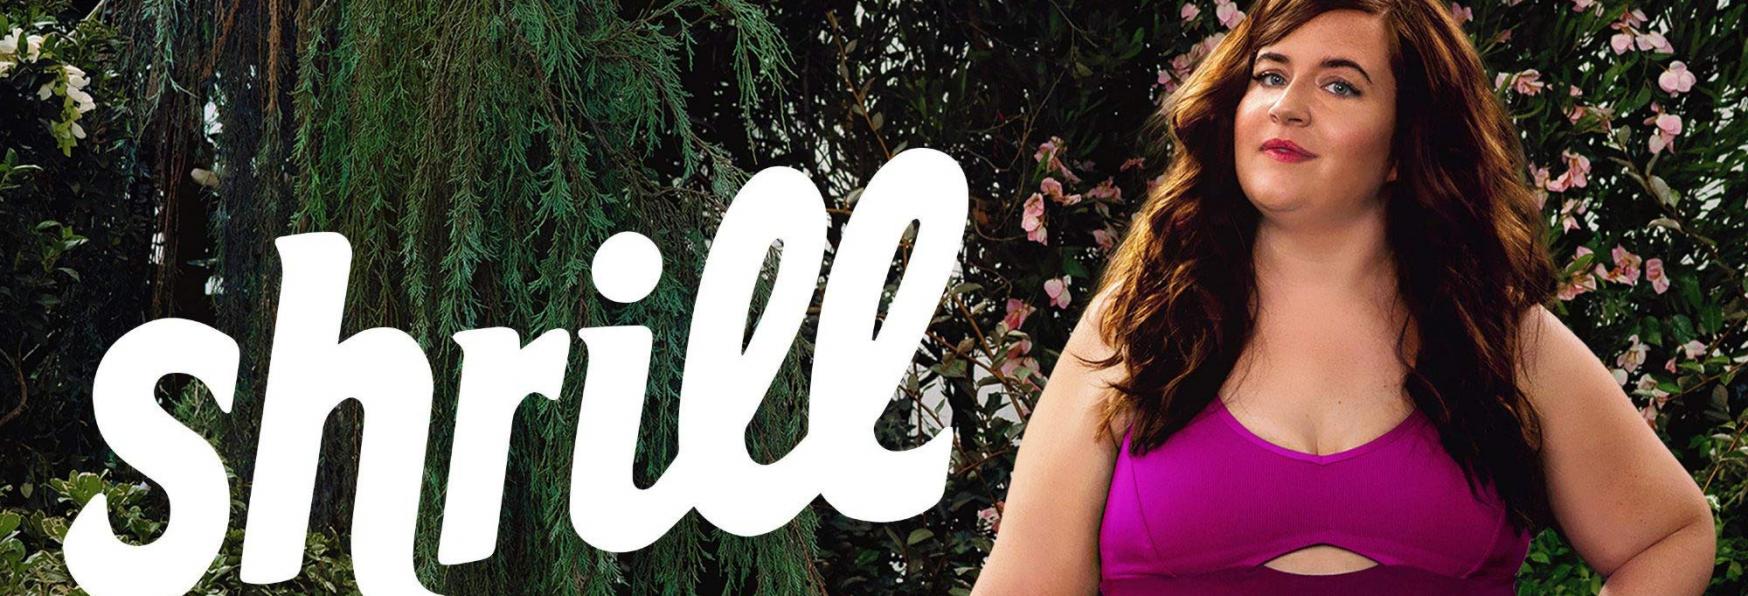 Shrill 3: Rinnovata per una nuova Stagione la Serie TV di Hulu